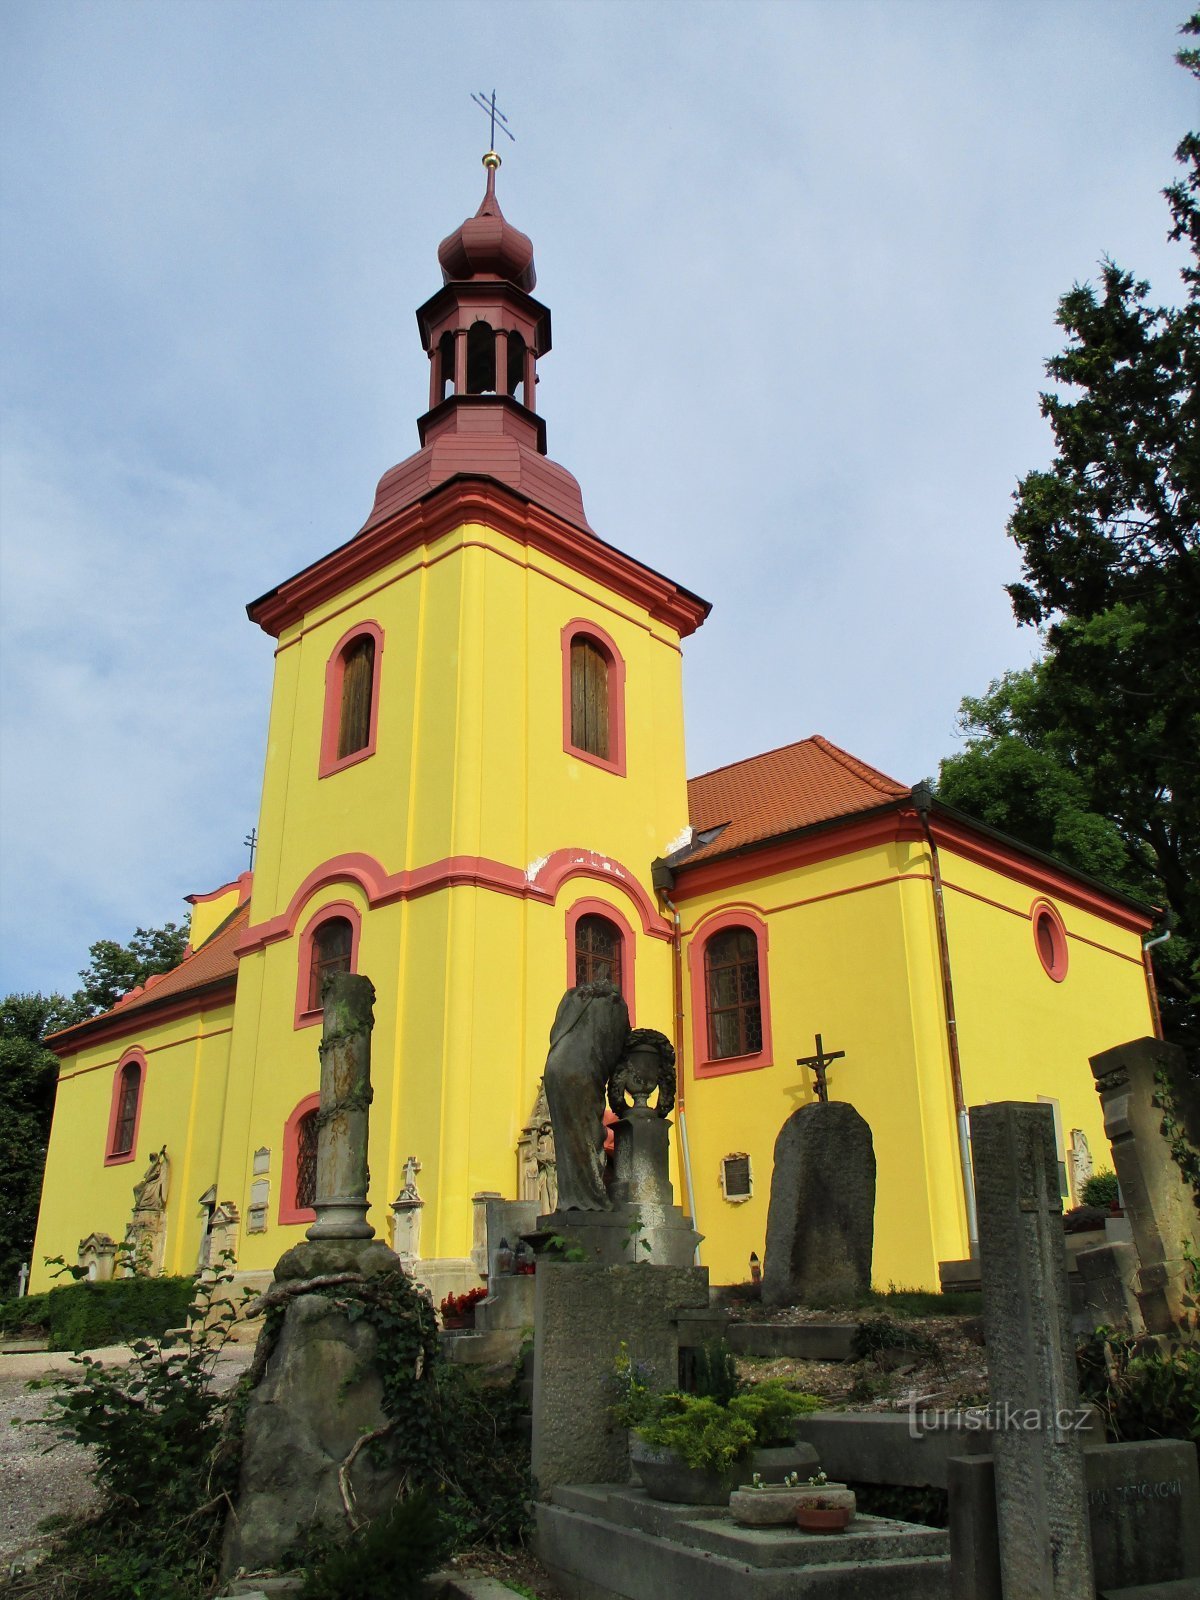 Pokopališka cerkev sv. Gothard, škof (Hořice, 26.7.2020. XNUMX. XNUMX)